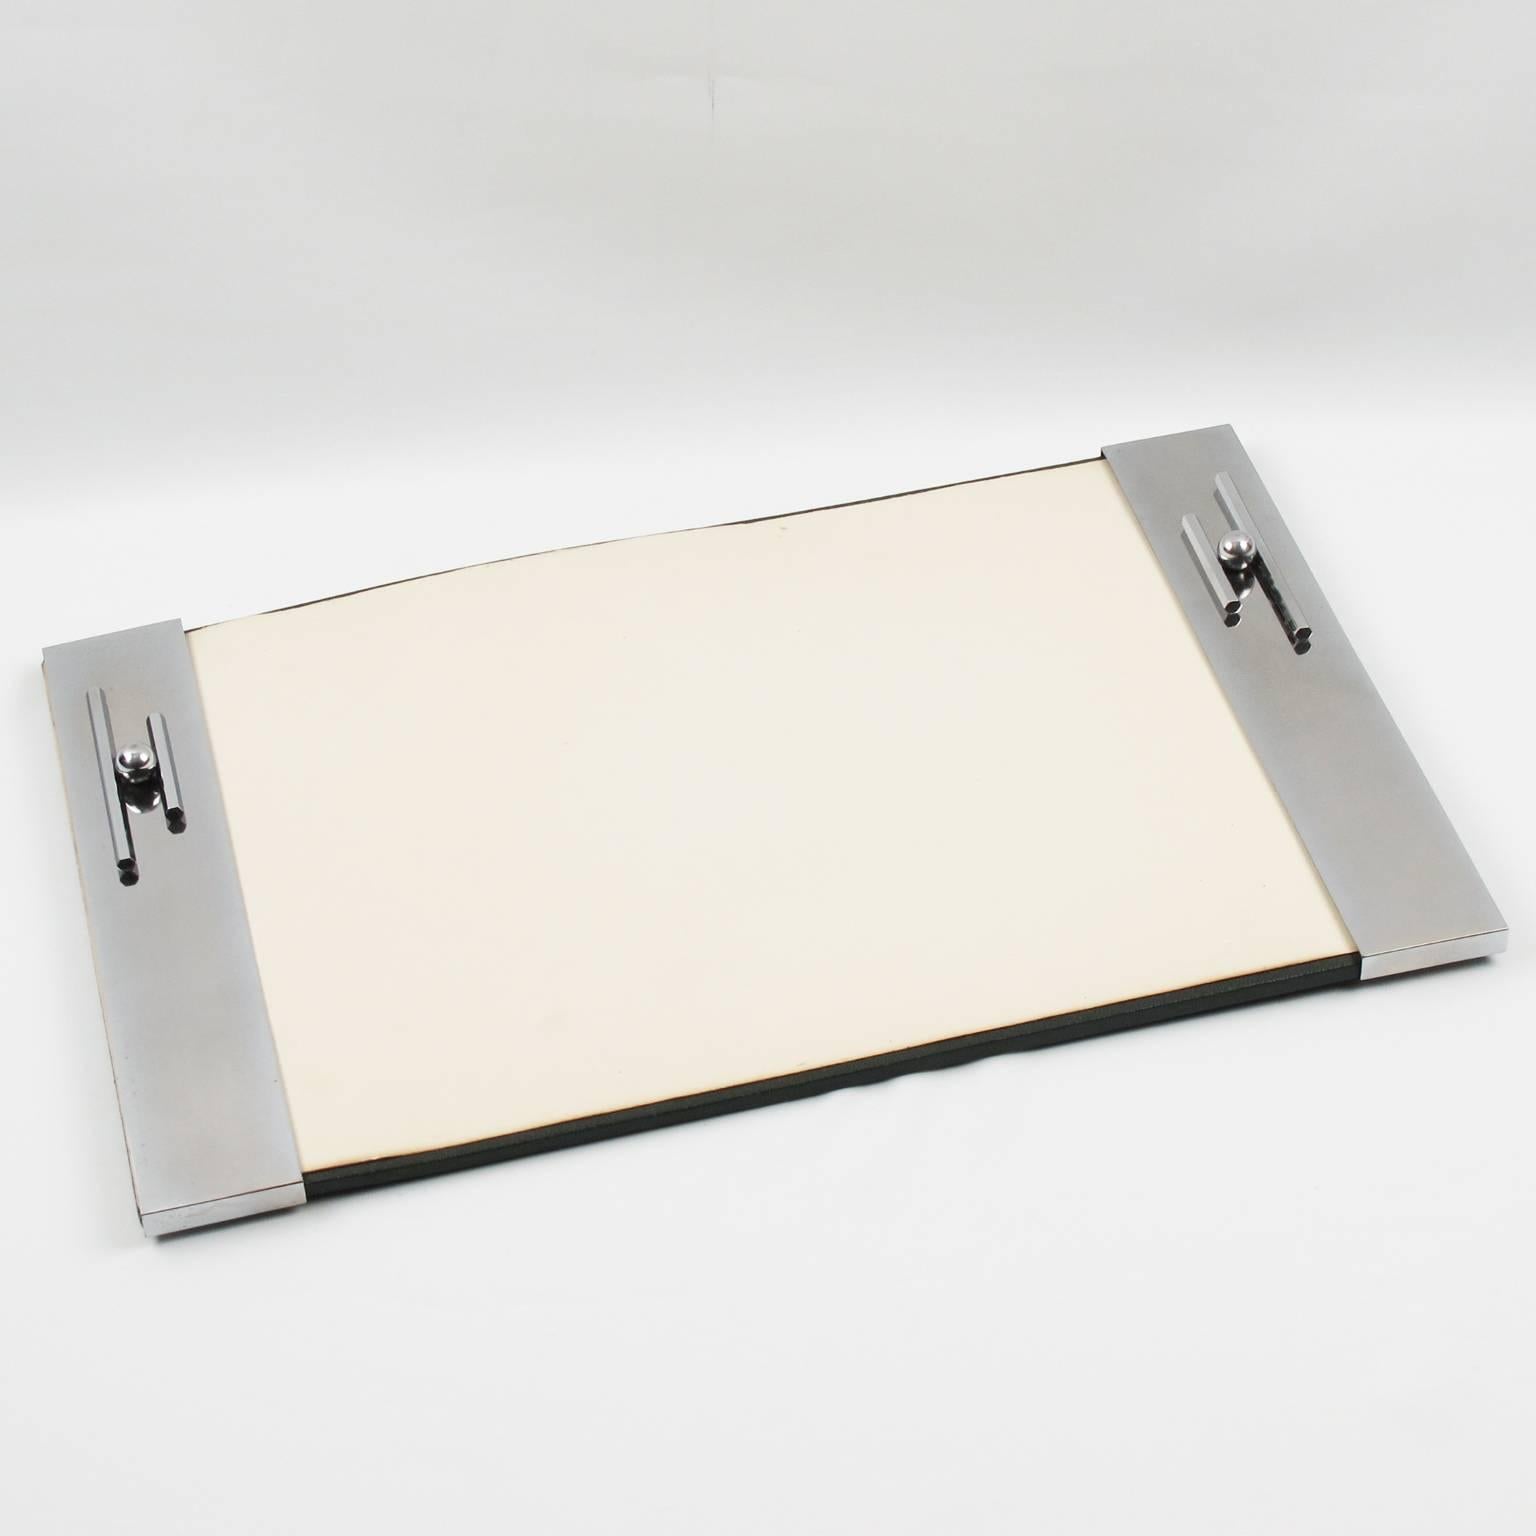 Elegant vintage Art Deco modernist desk blotter pad. Geometric dimensional streamline chromed metal design on both side with original blotter paper sheet, France, circa 1930s.

Measurements: 17.32 in. wide (44 cm) x 11 in. high (28 cm).